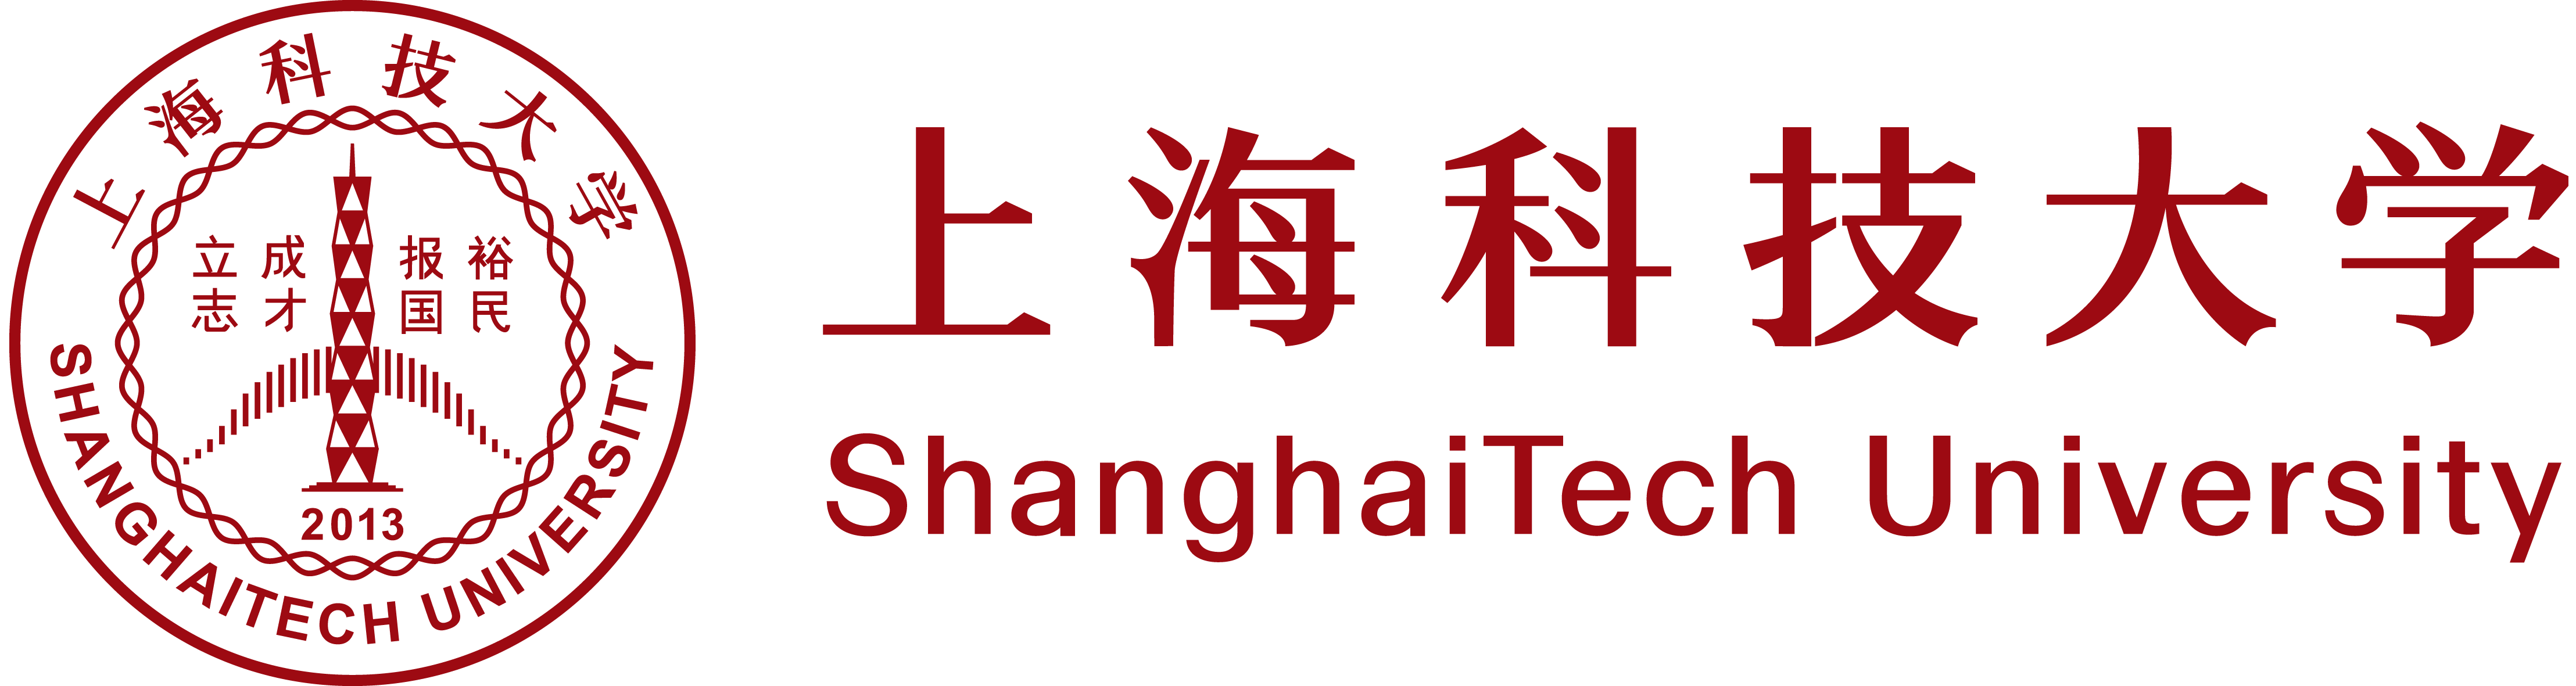 shanghai tech logo